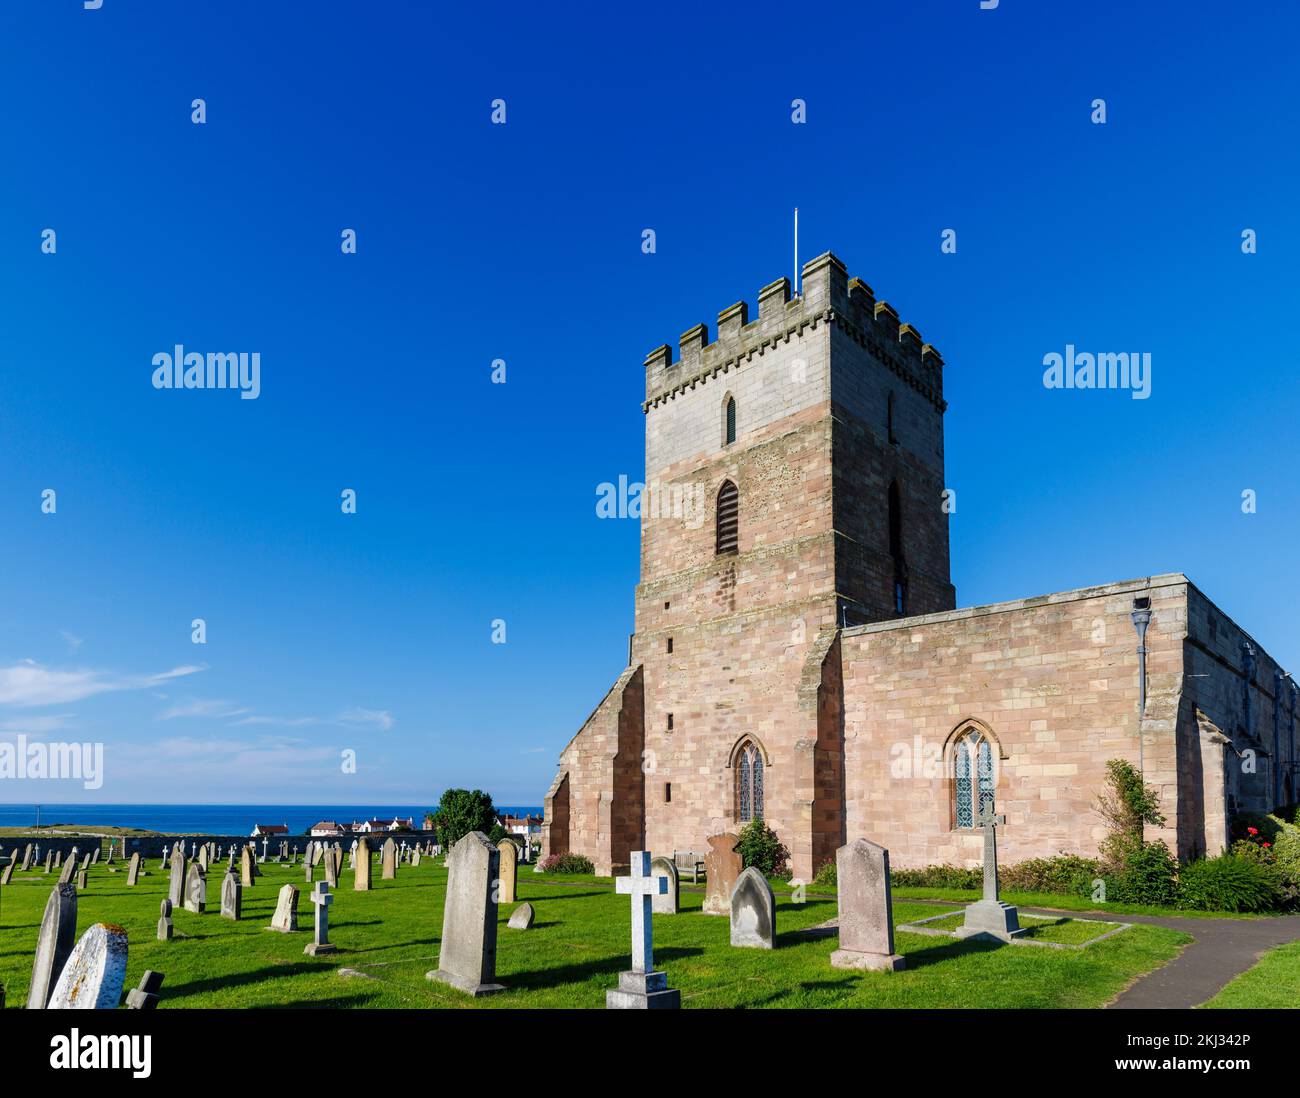 St. Aidan's Church in Bamburgh, ein Dorf in Northumberland an der Nordostküste Englands, das das Denkmal für Grace Darling enthält Stockfoto